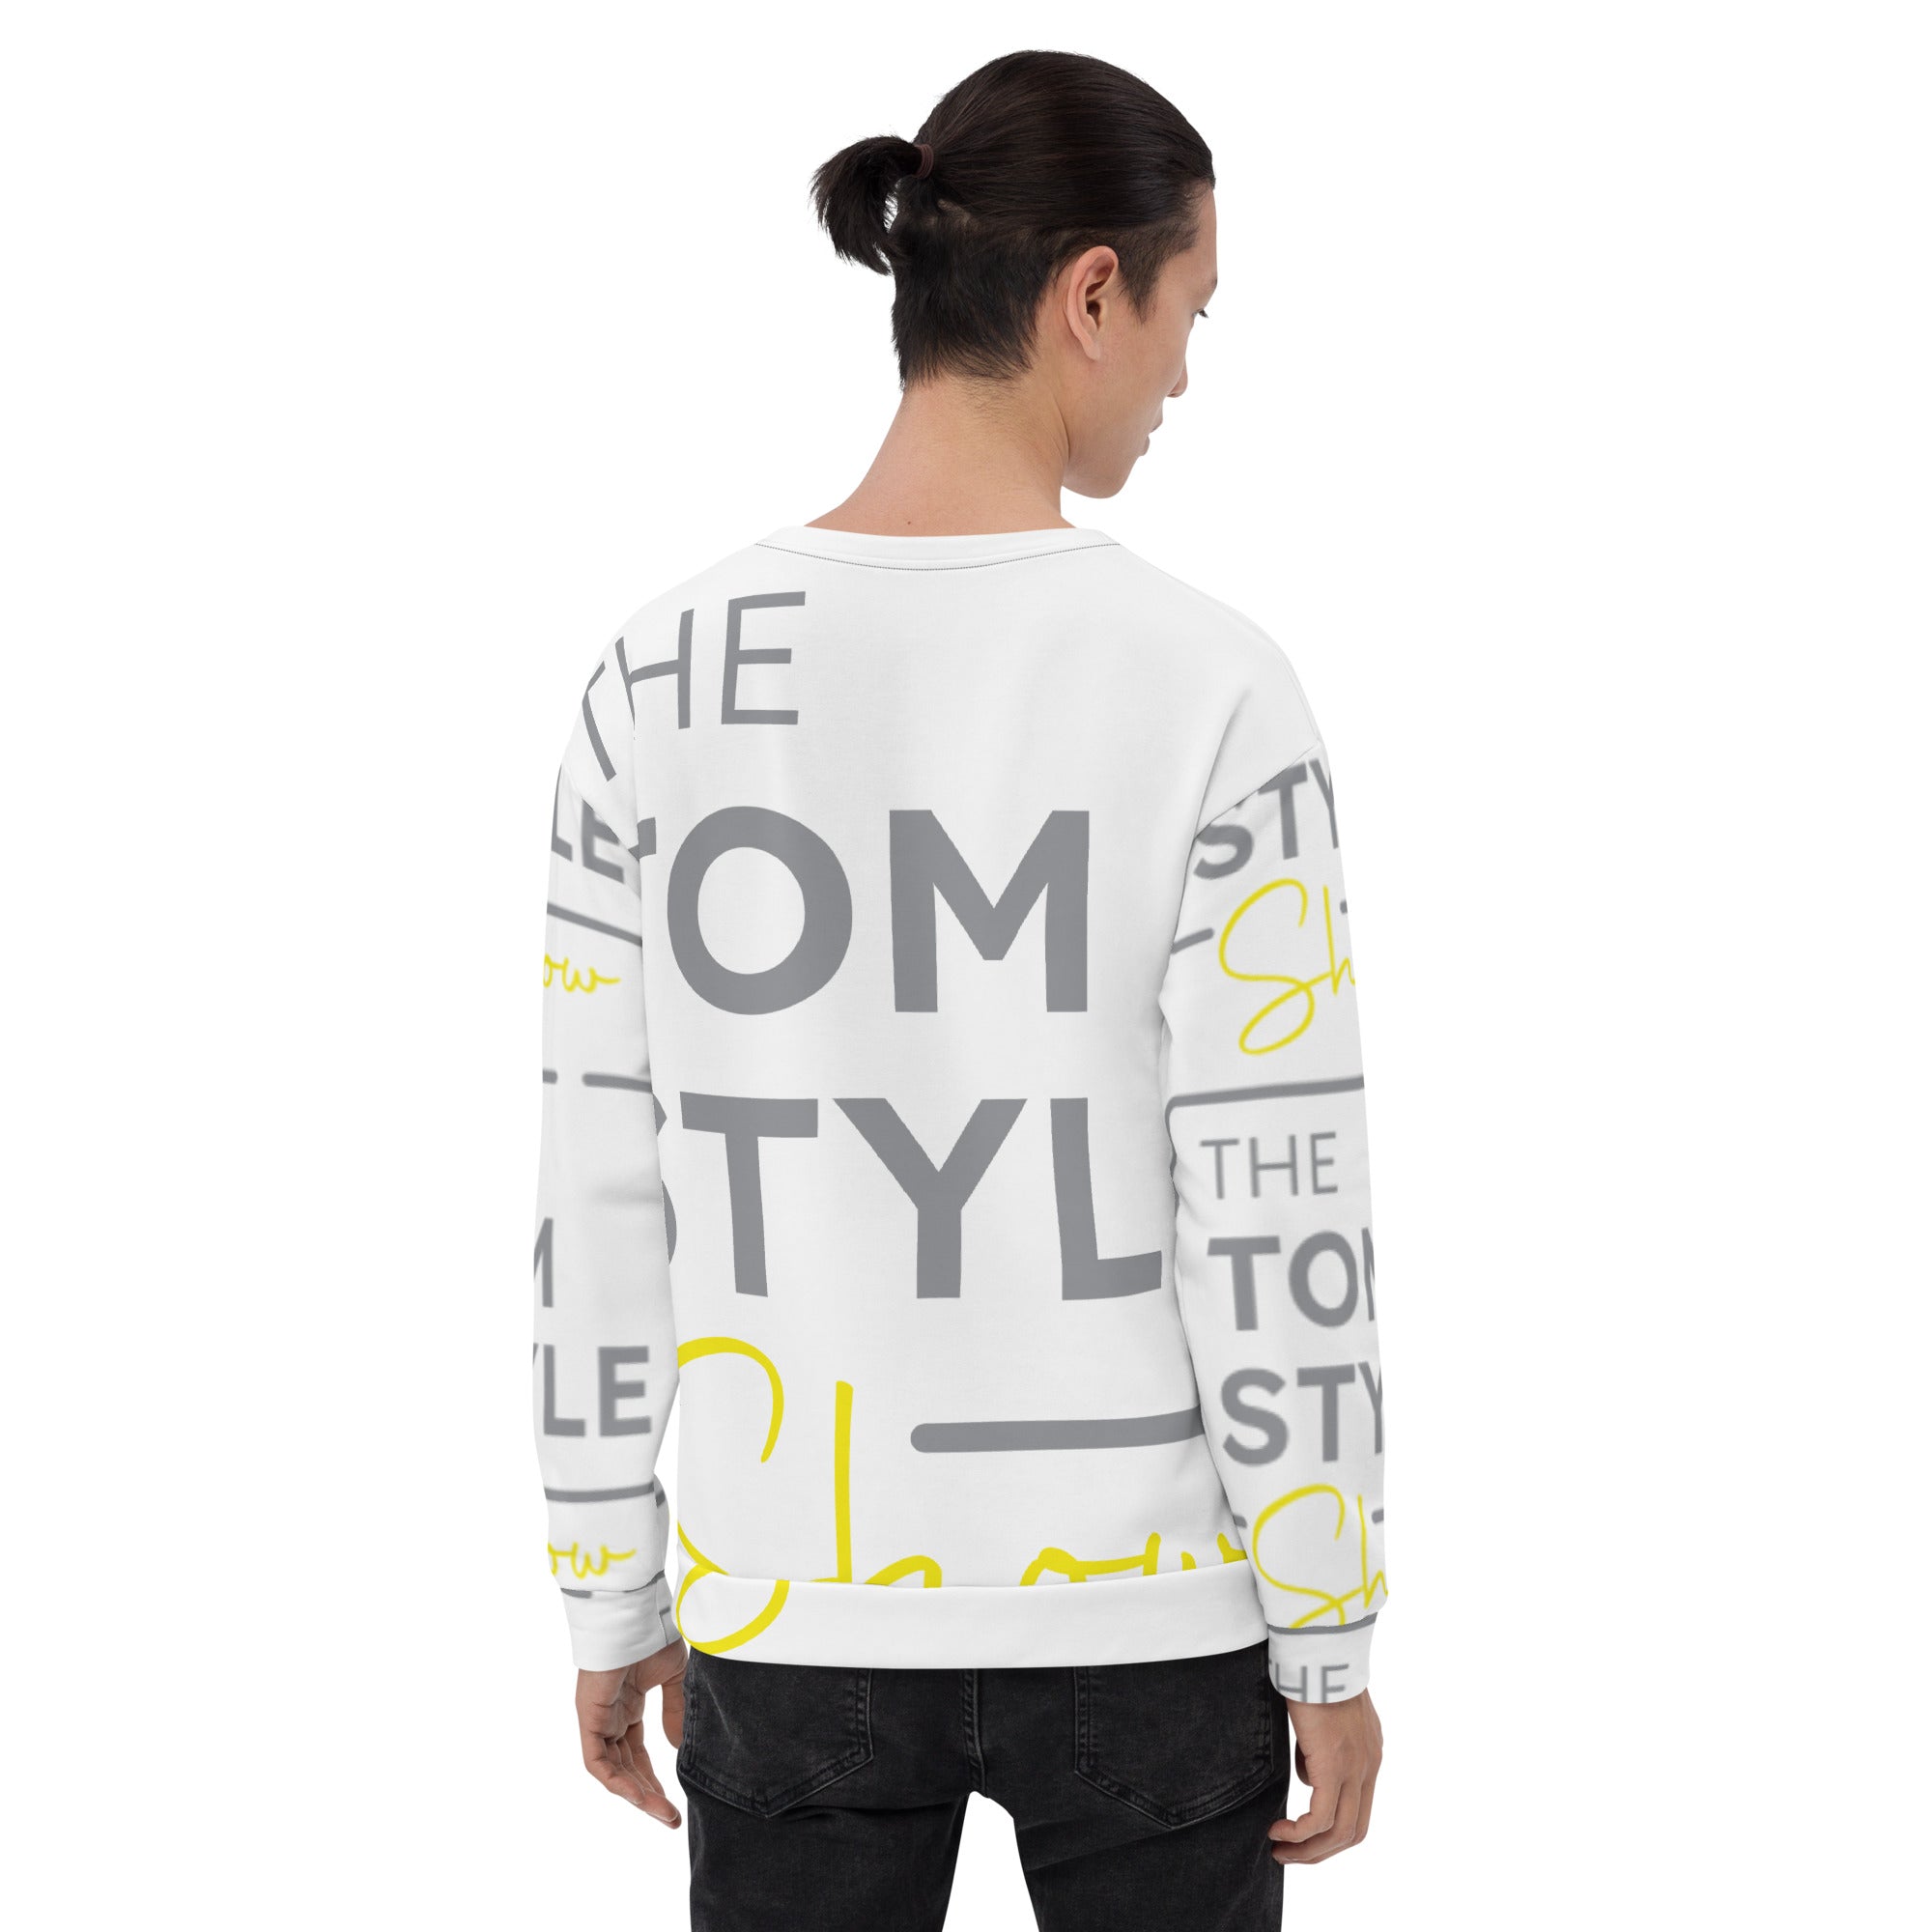 Men's Sweatshirt - Tom Style Show